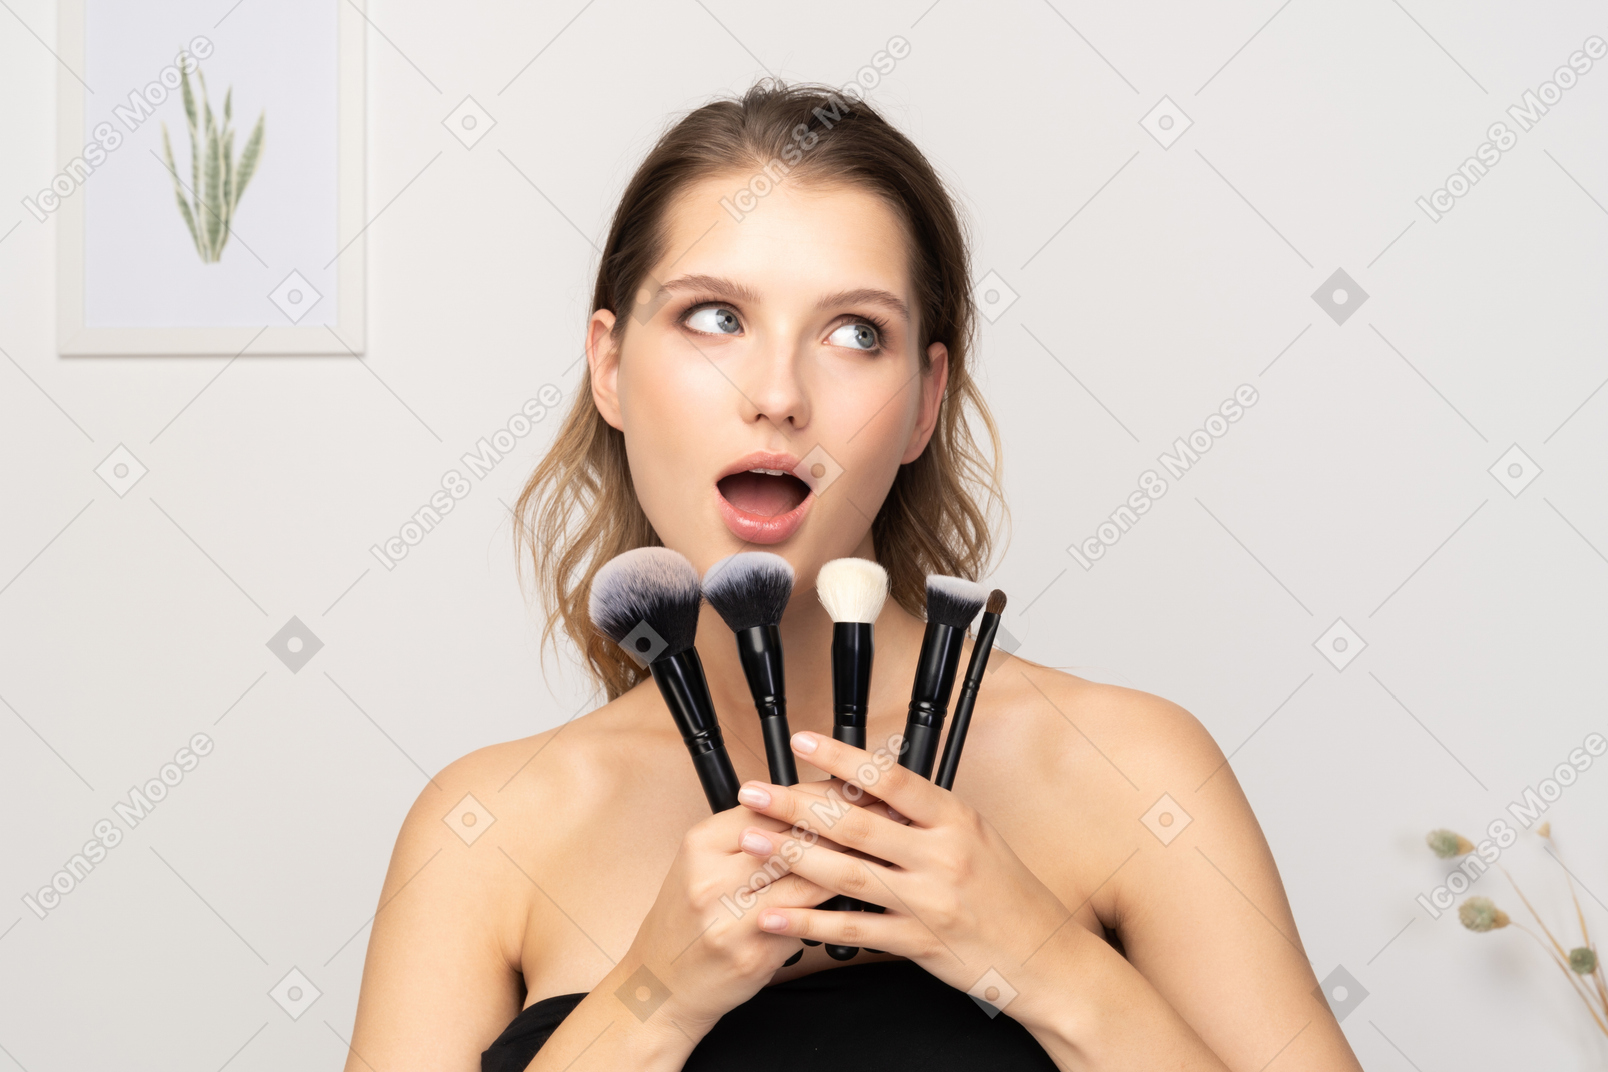 Vista frontal de uma jovem surpresa segurando pincéis de maquiagem